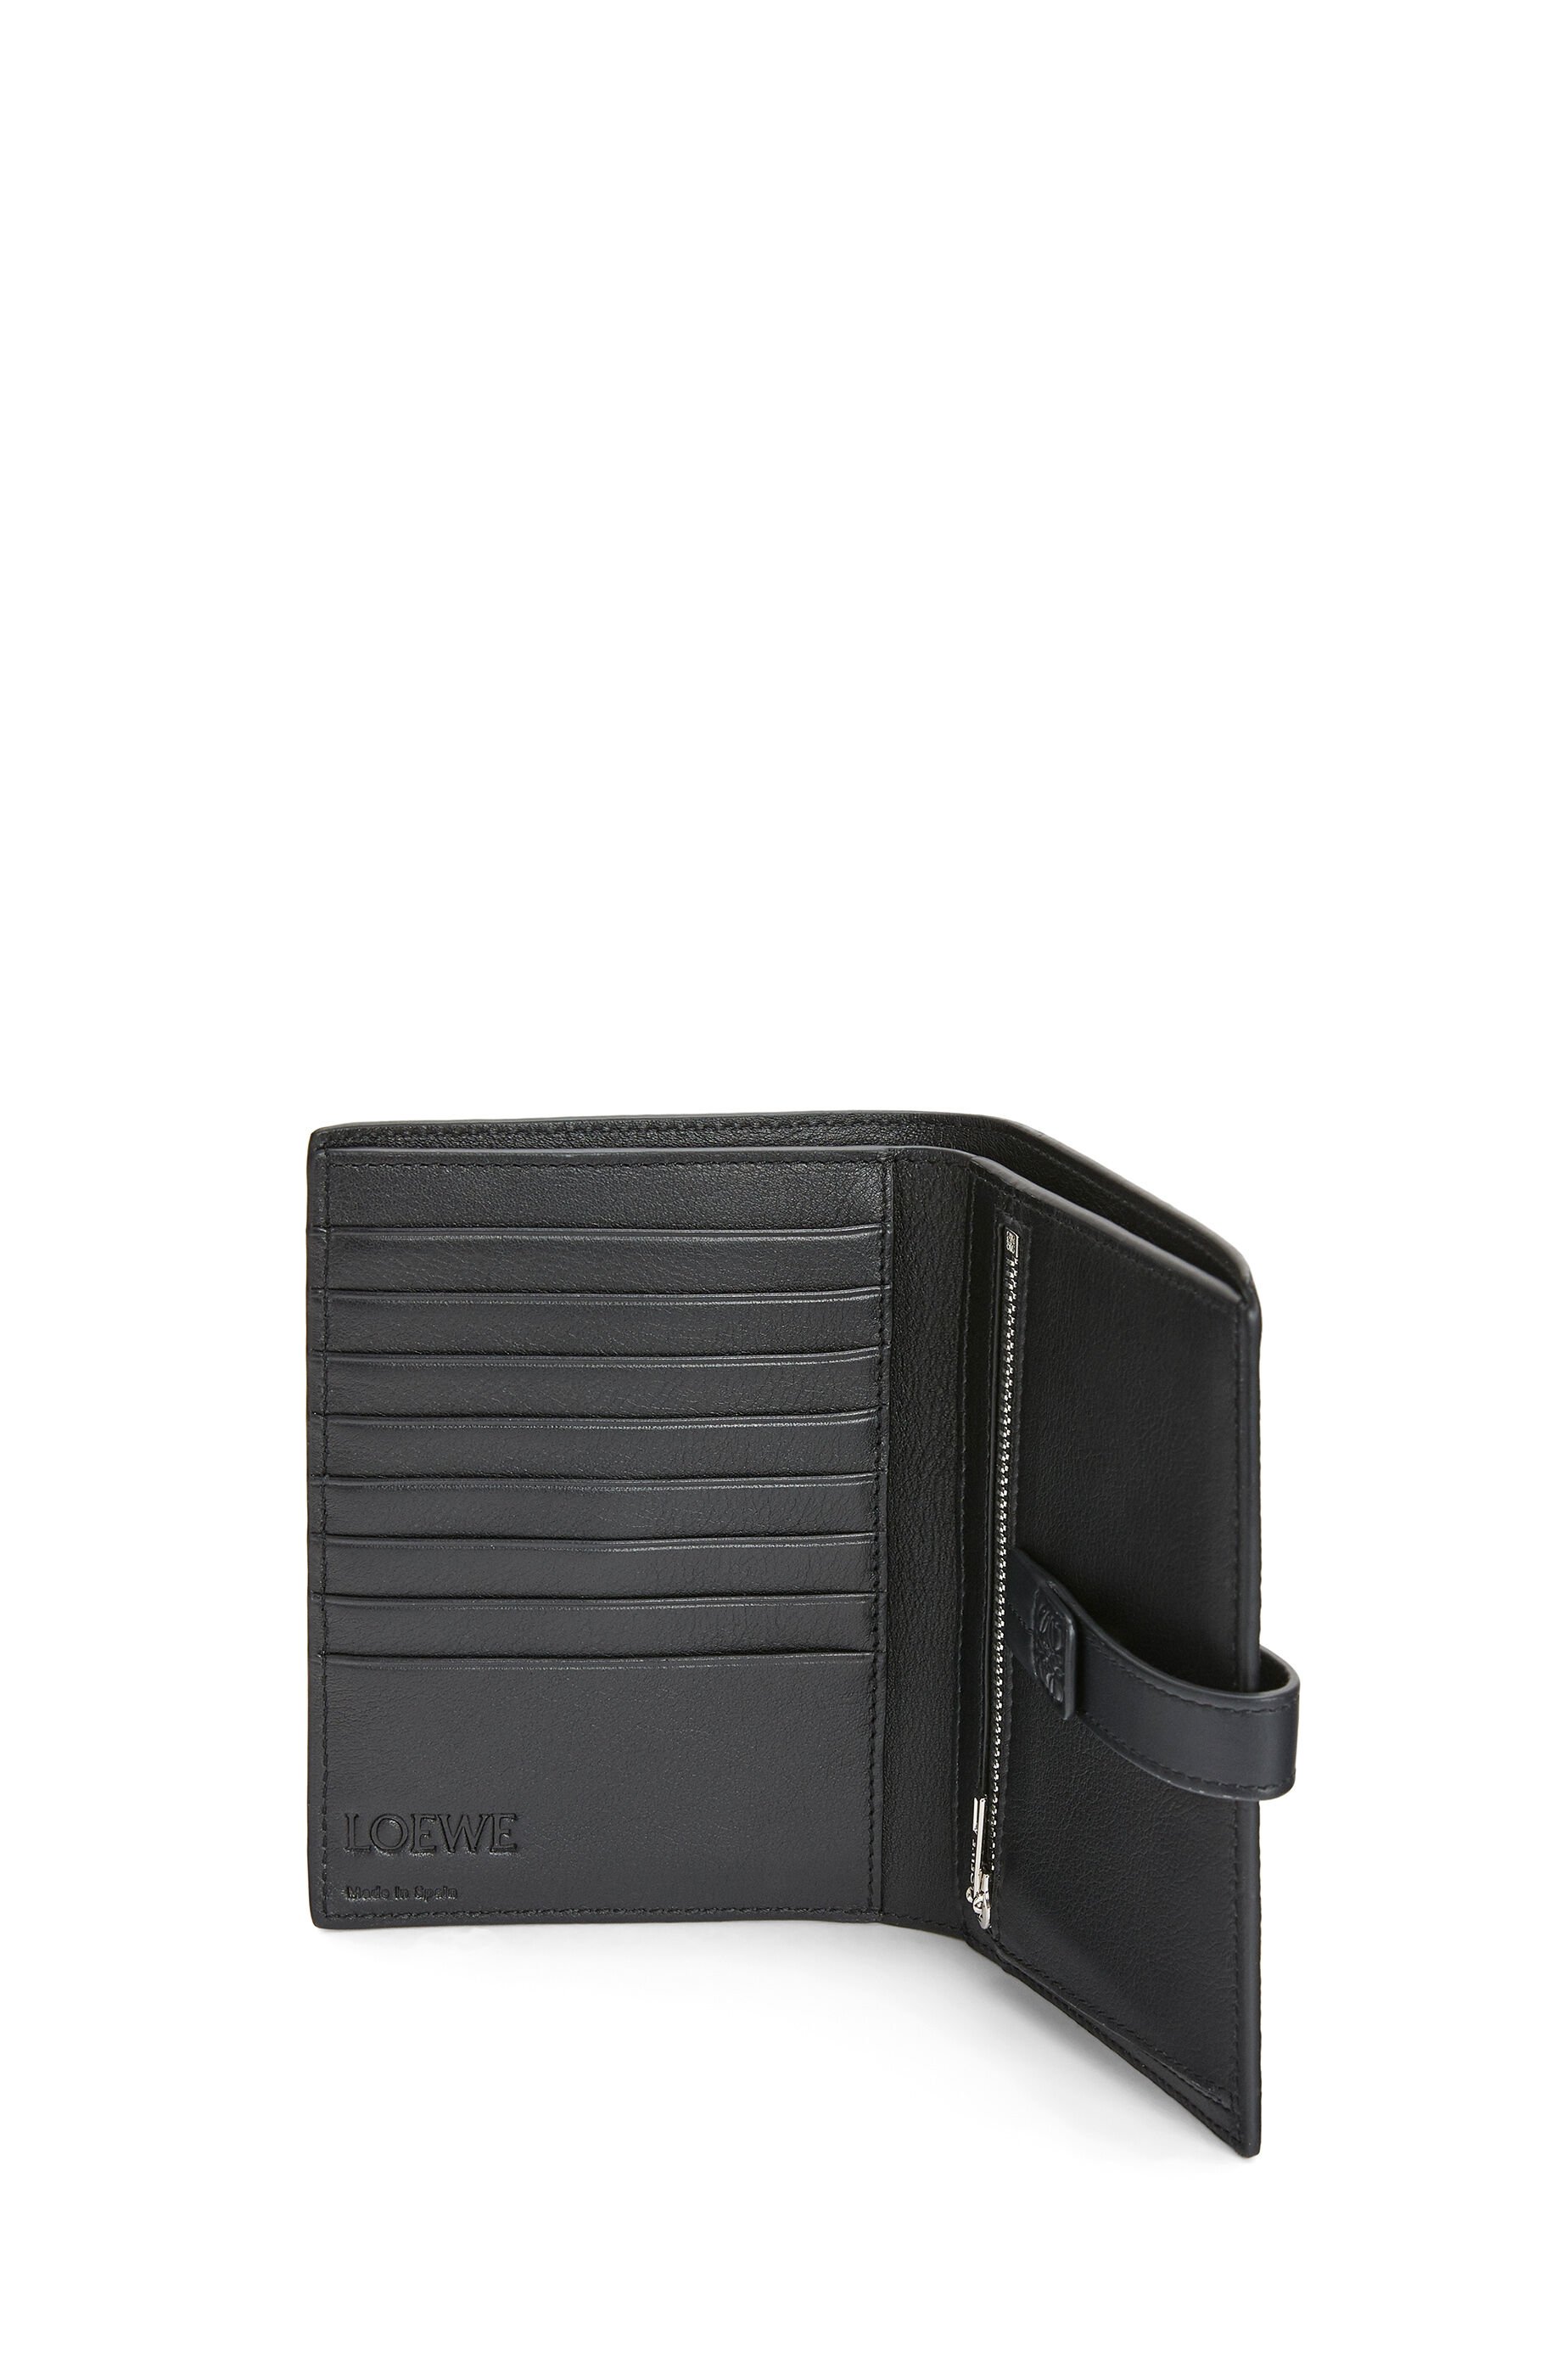 loewe compact wallet